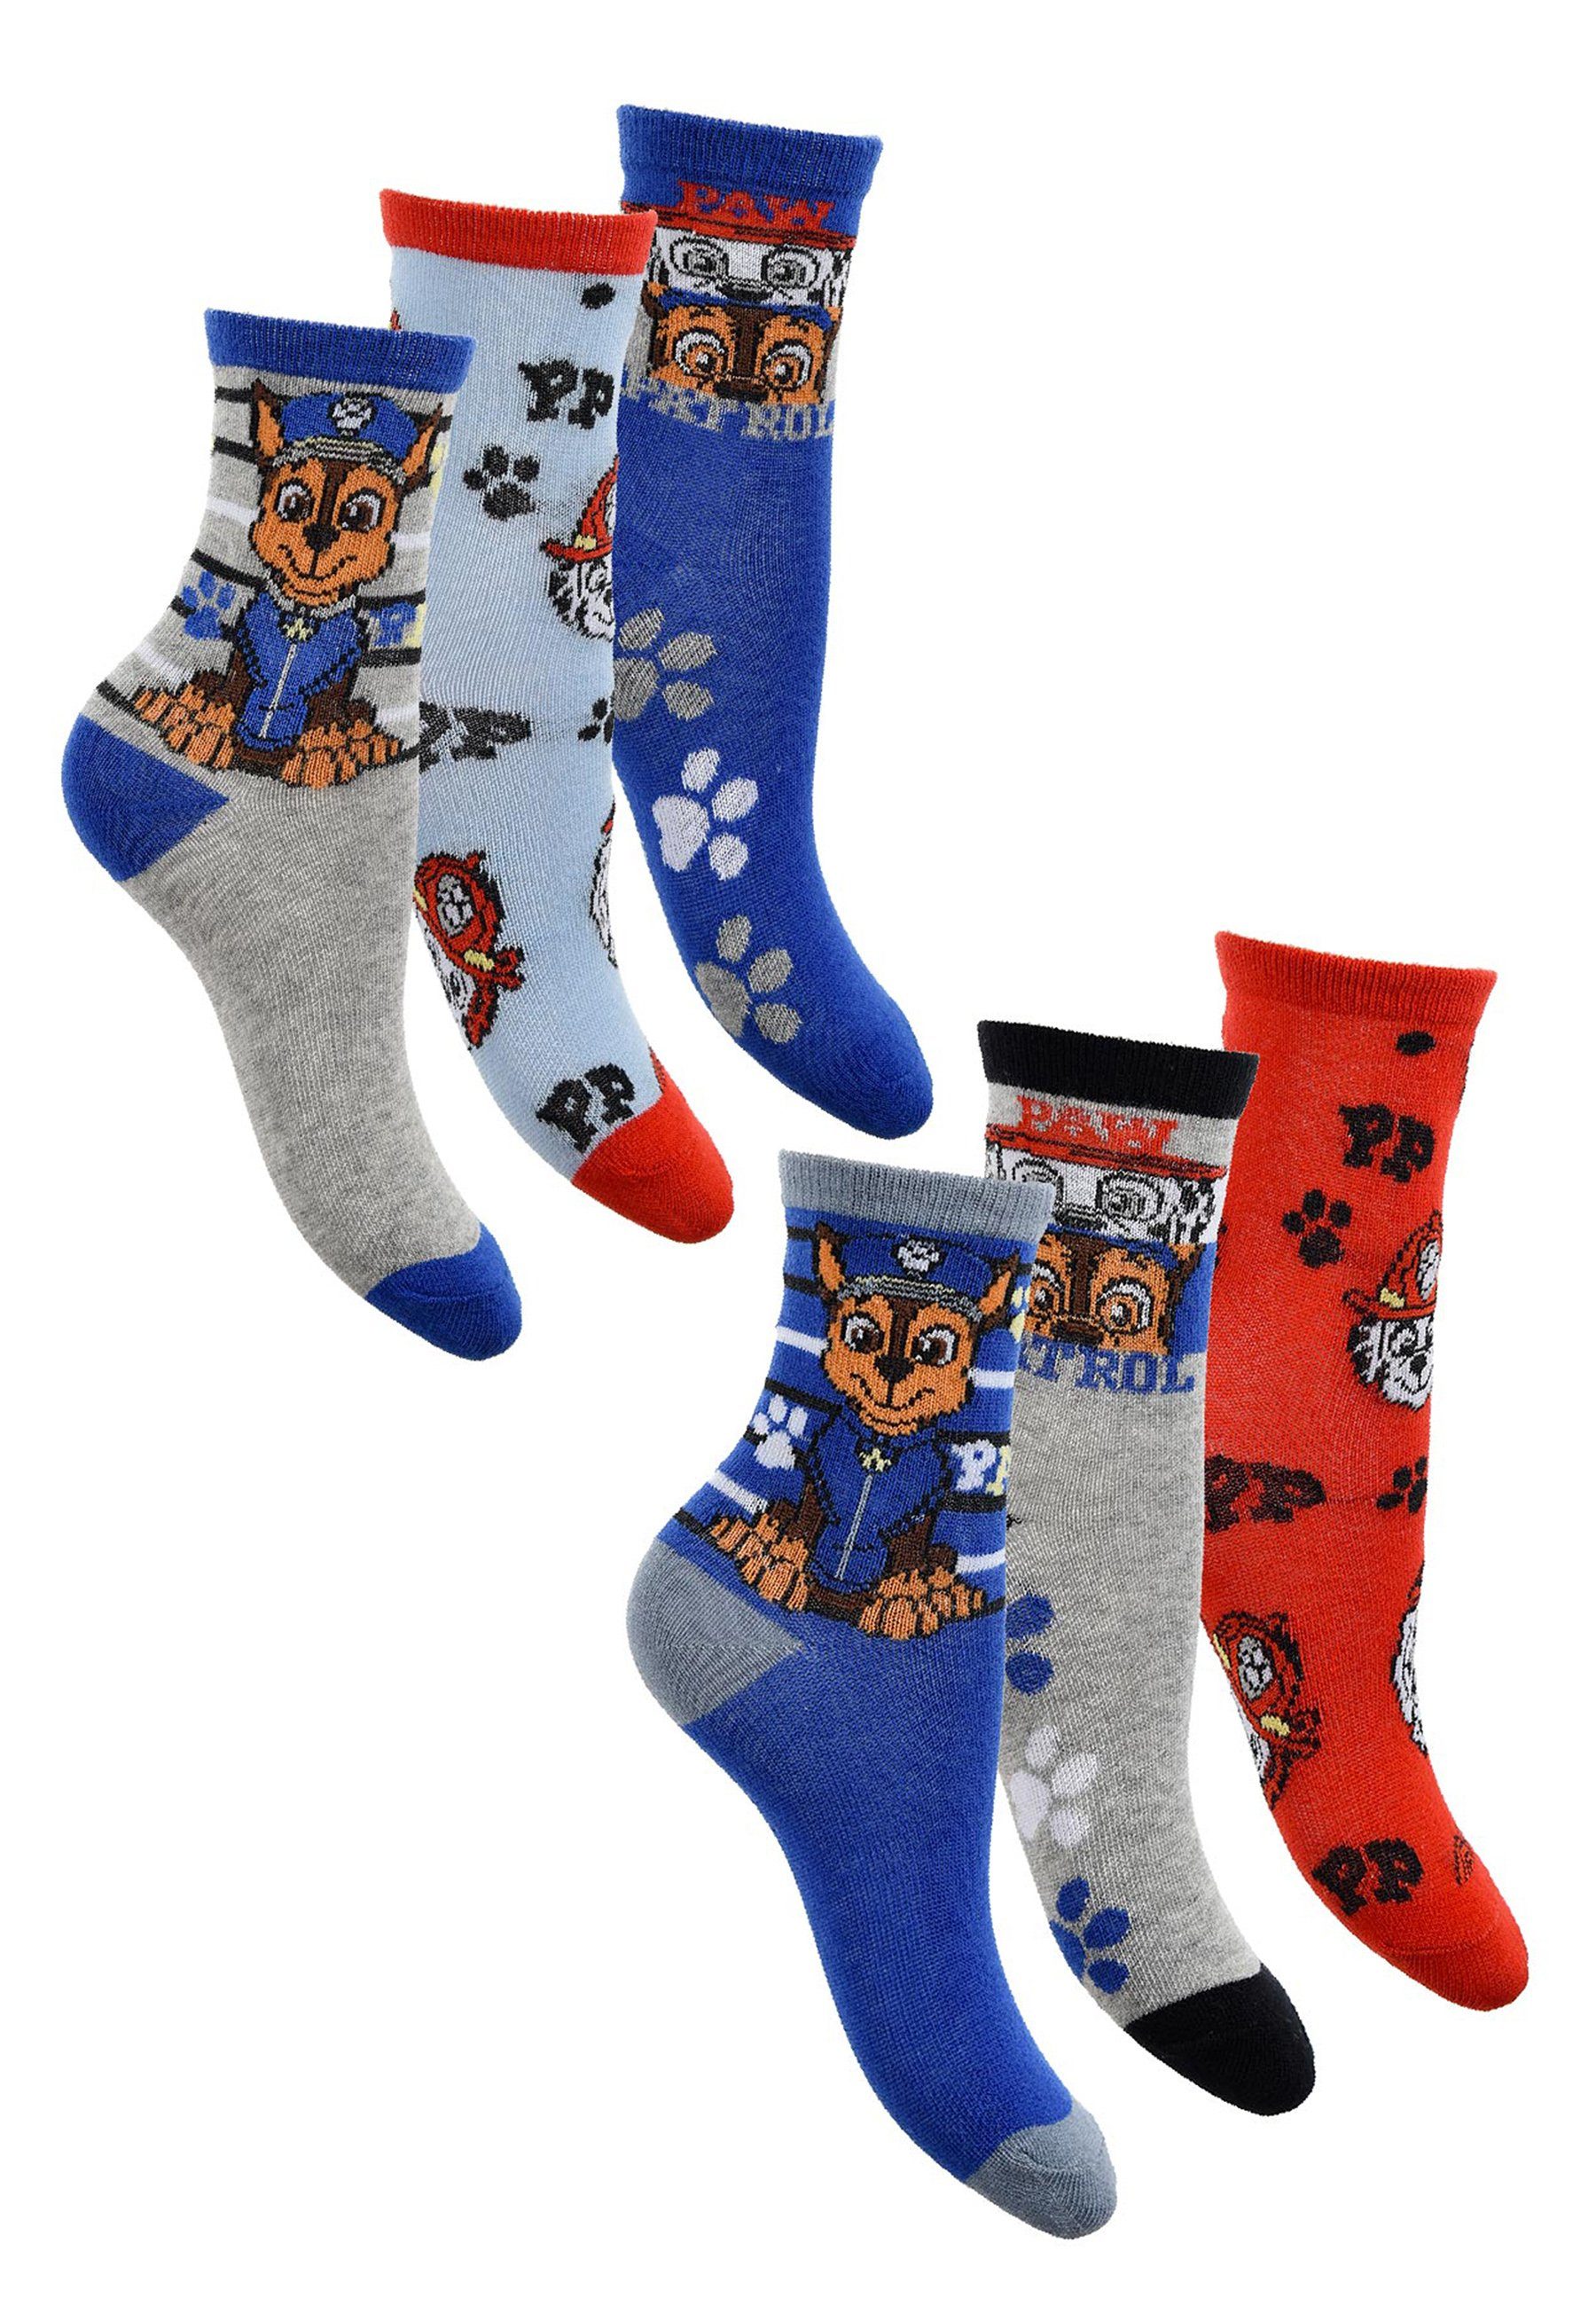 PAW PATROL Socken »Marshall Chase Kinder Jungen Socken Strümpfe« (6-Paar)  online kaufen | OTTO